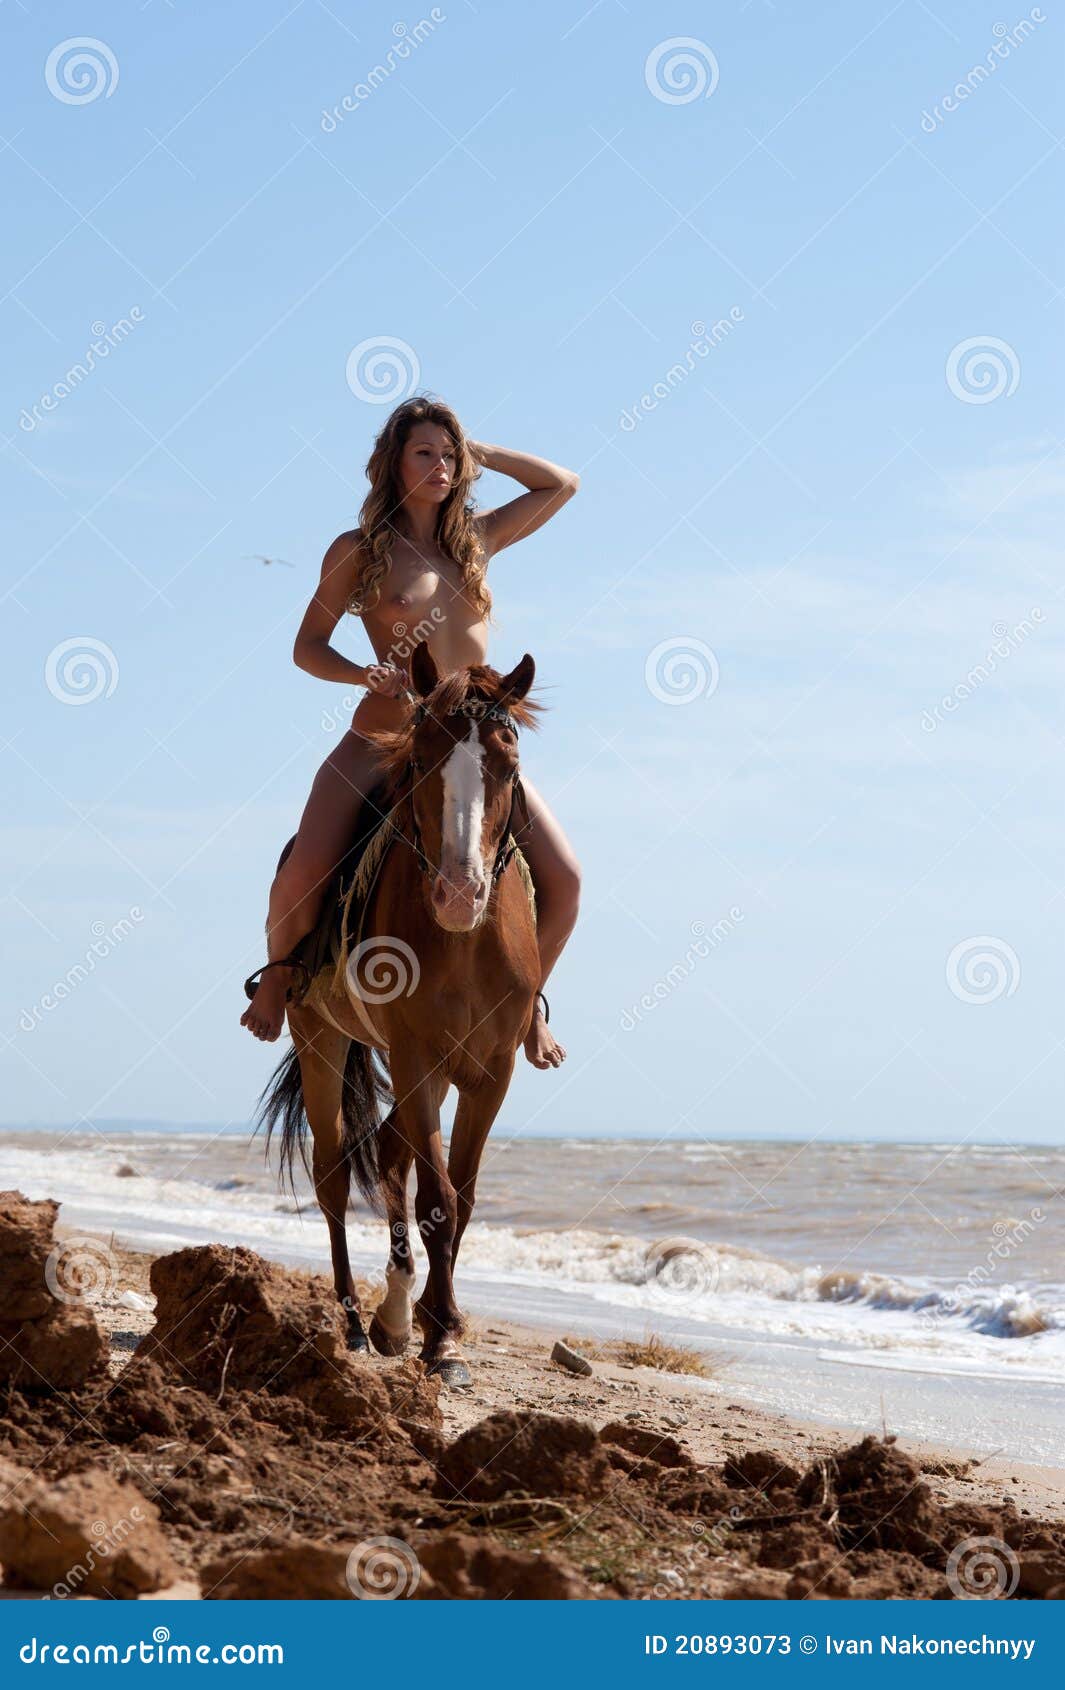 Nackt auf pferd frau Können Mädchen